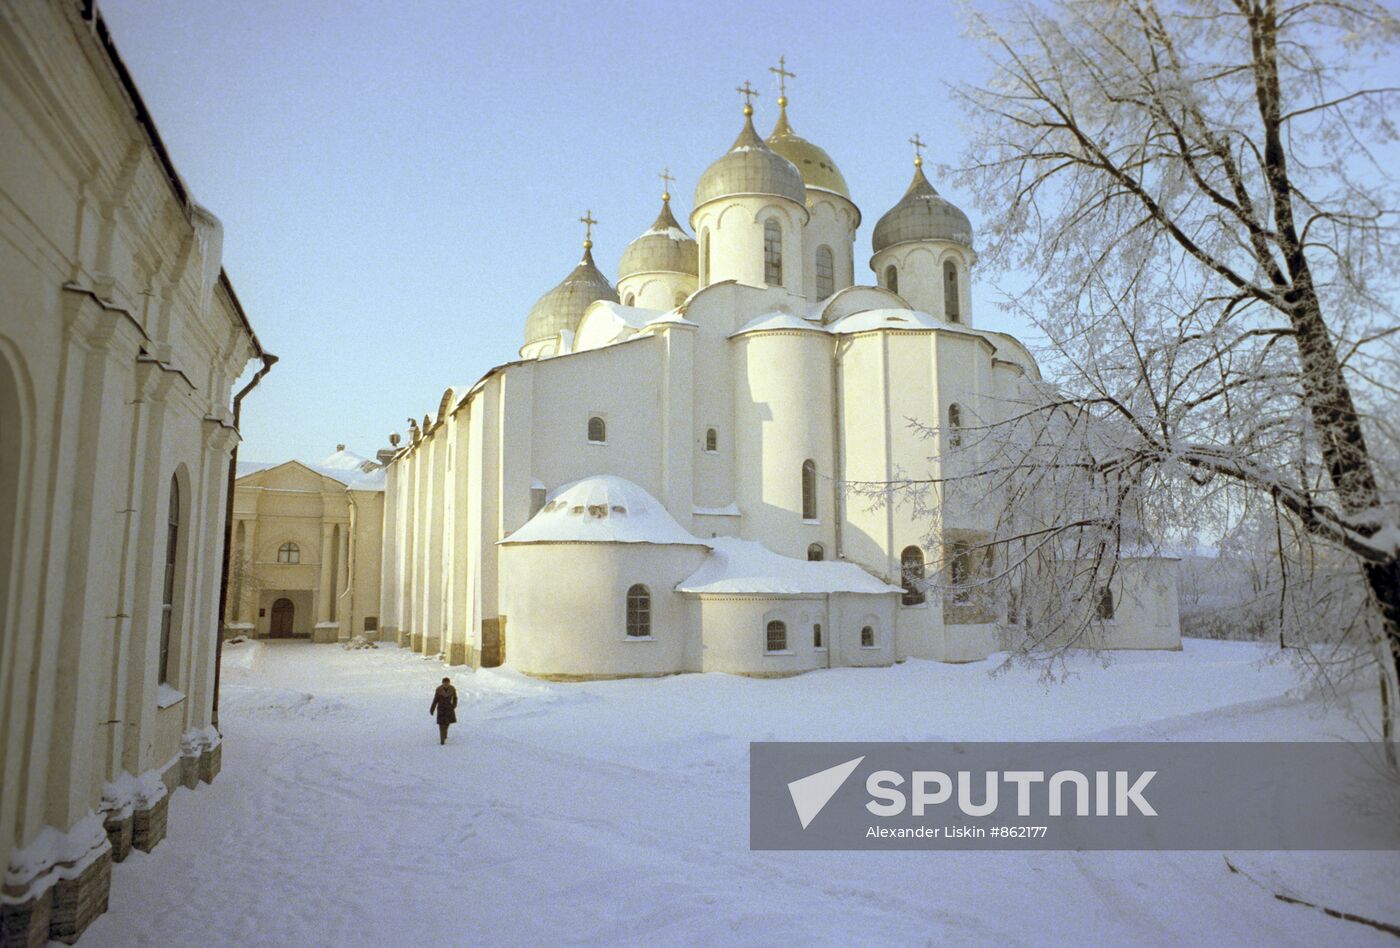 St Sophia Cathedral in Novgorod